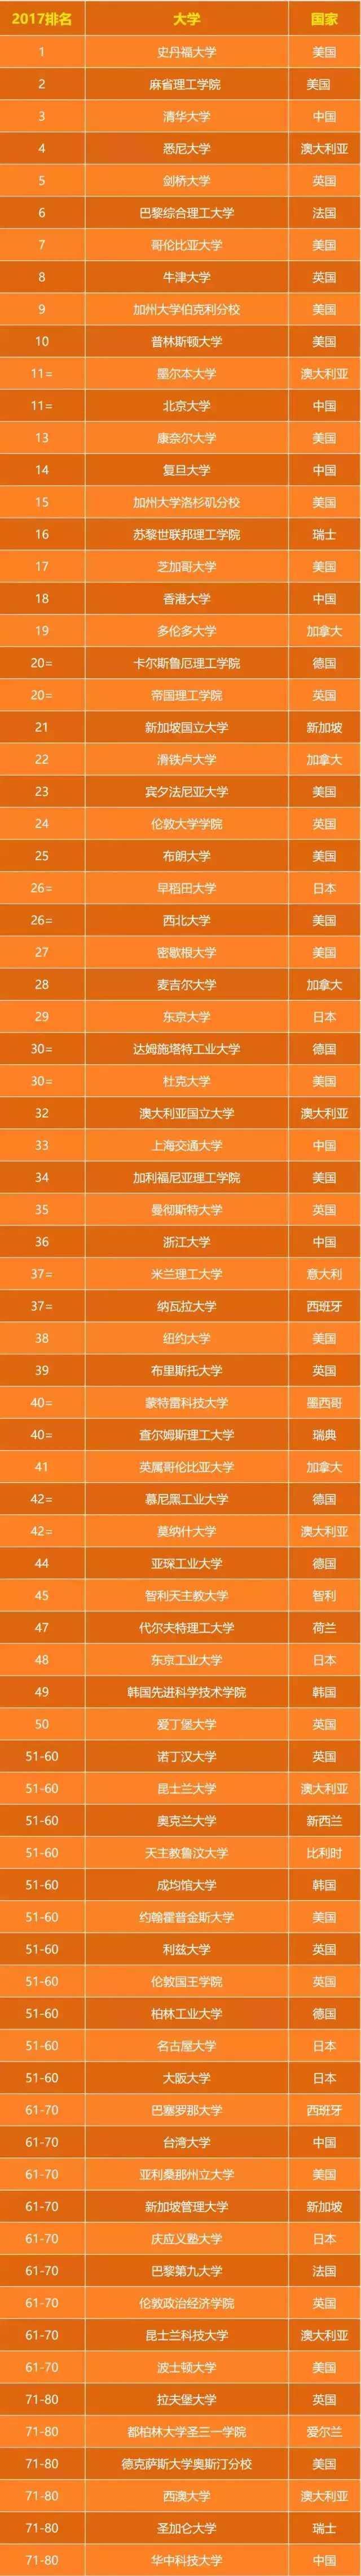 2017全球大学就业竞争力排行榜top100公布，中国15所大学上榜!